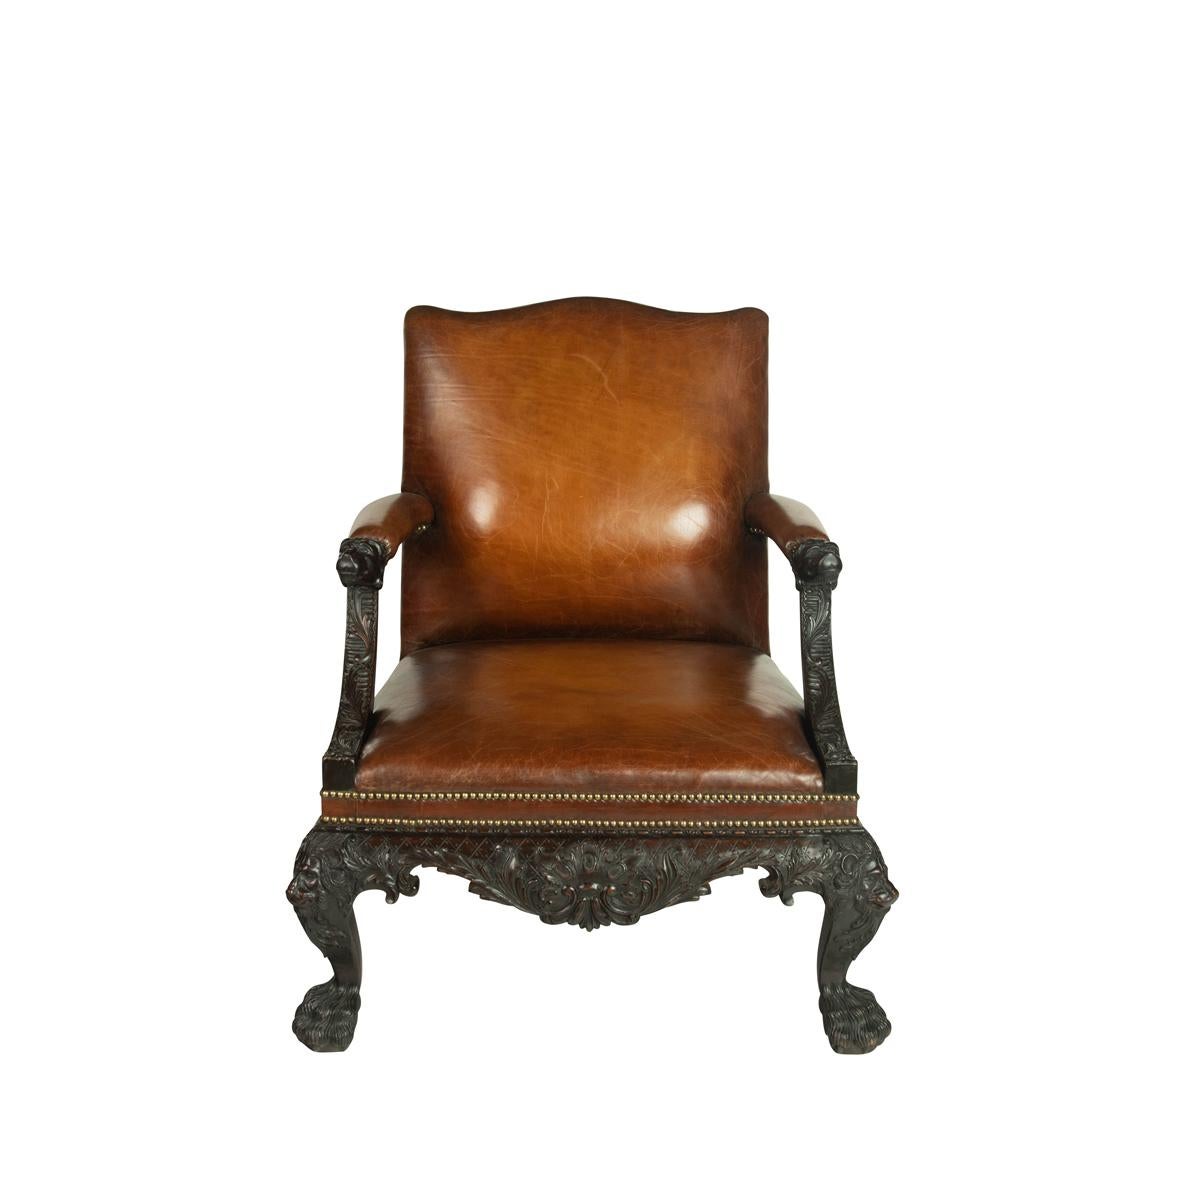 Une grande paire de meubles en acajou irlandais  fauteuils de bibliothèque dans la  De style géorgien, le dossier rectangulaire, les accoudoirs et l'assise sont tapissés de cuir de châtaignier avec des clous en laiton. Les accoudoirs et les genoux